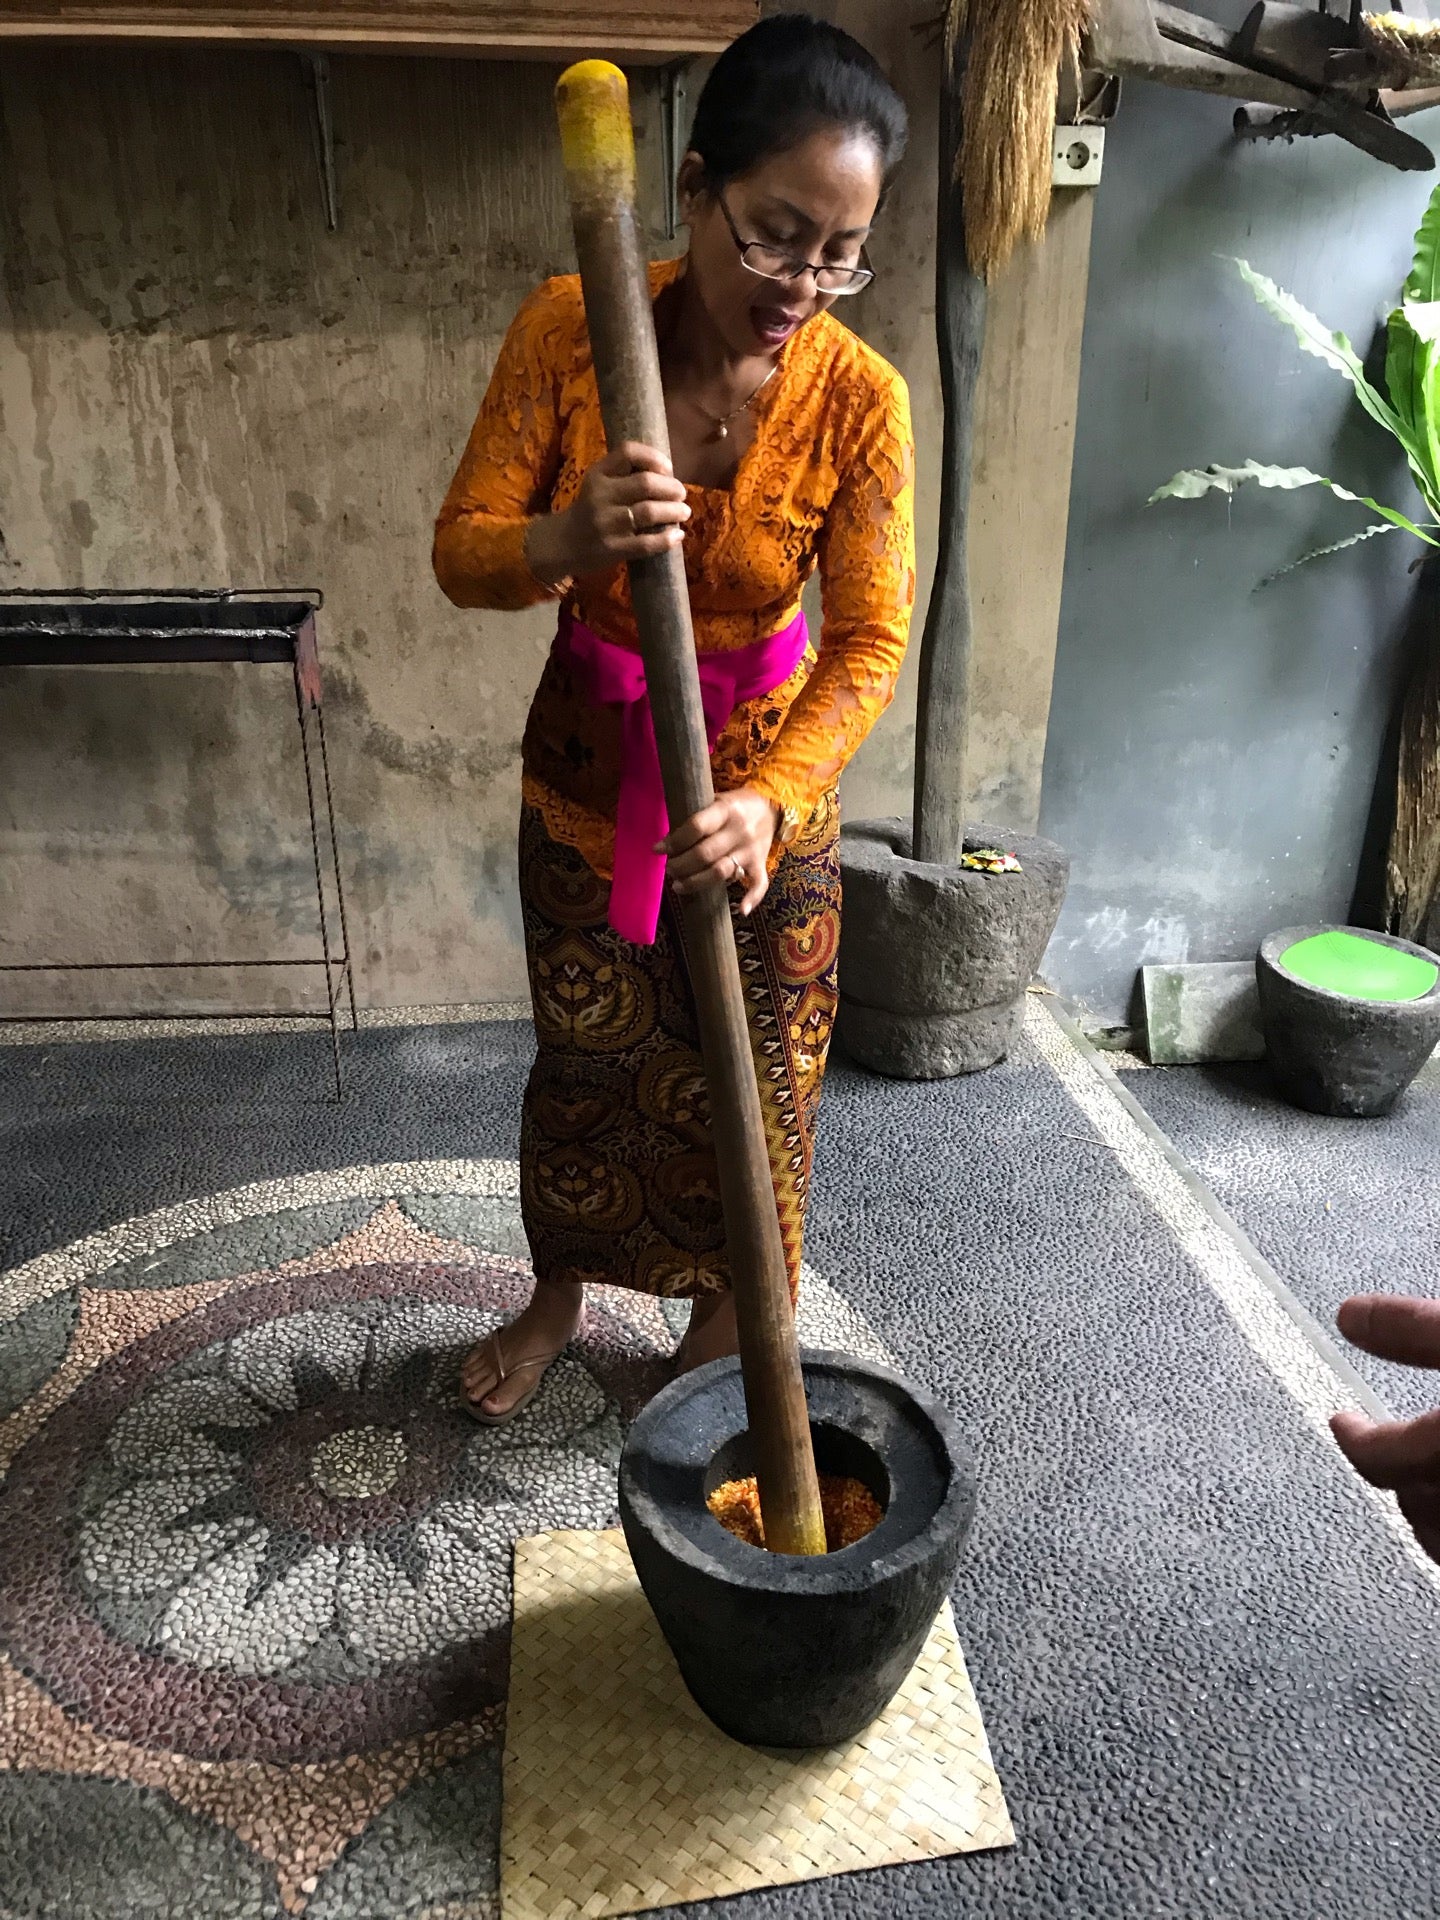 Ubad Ubud Bali Cooking Class